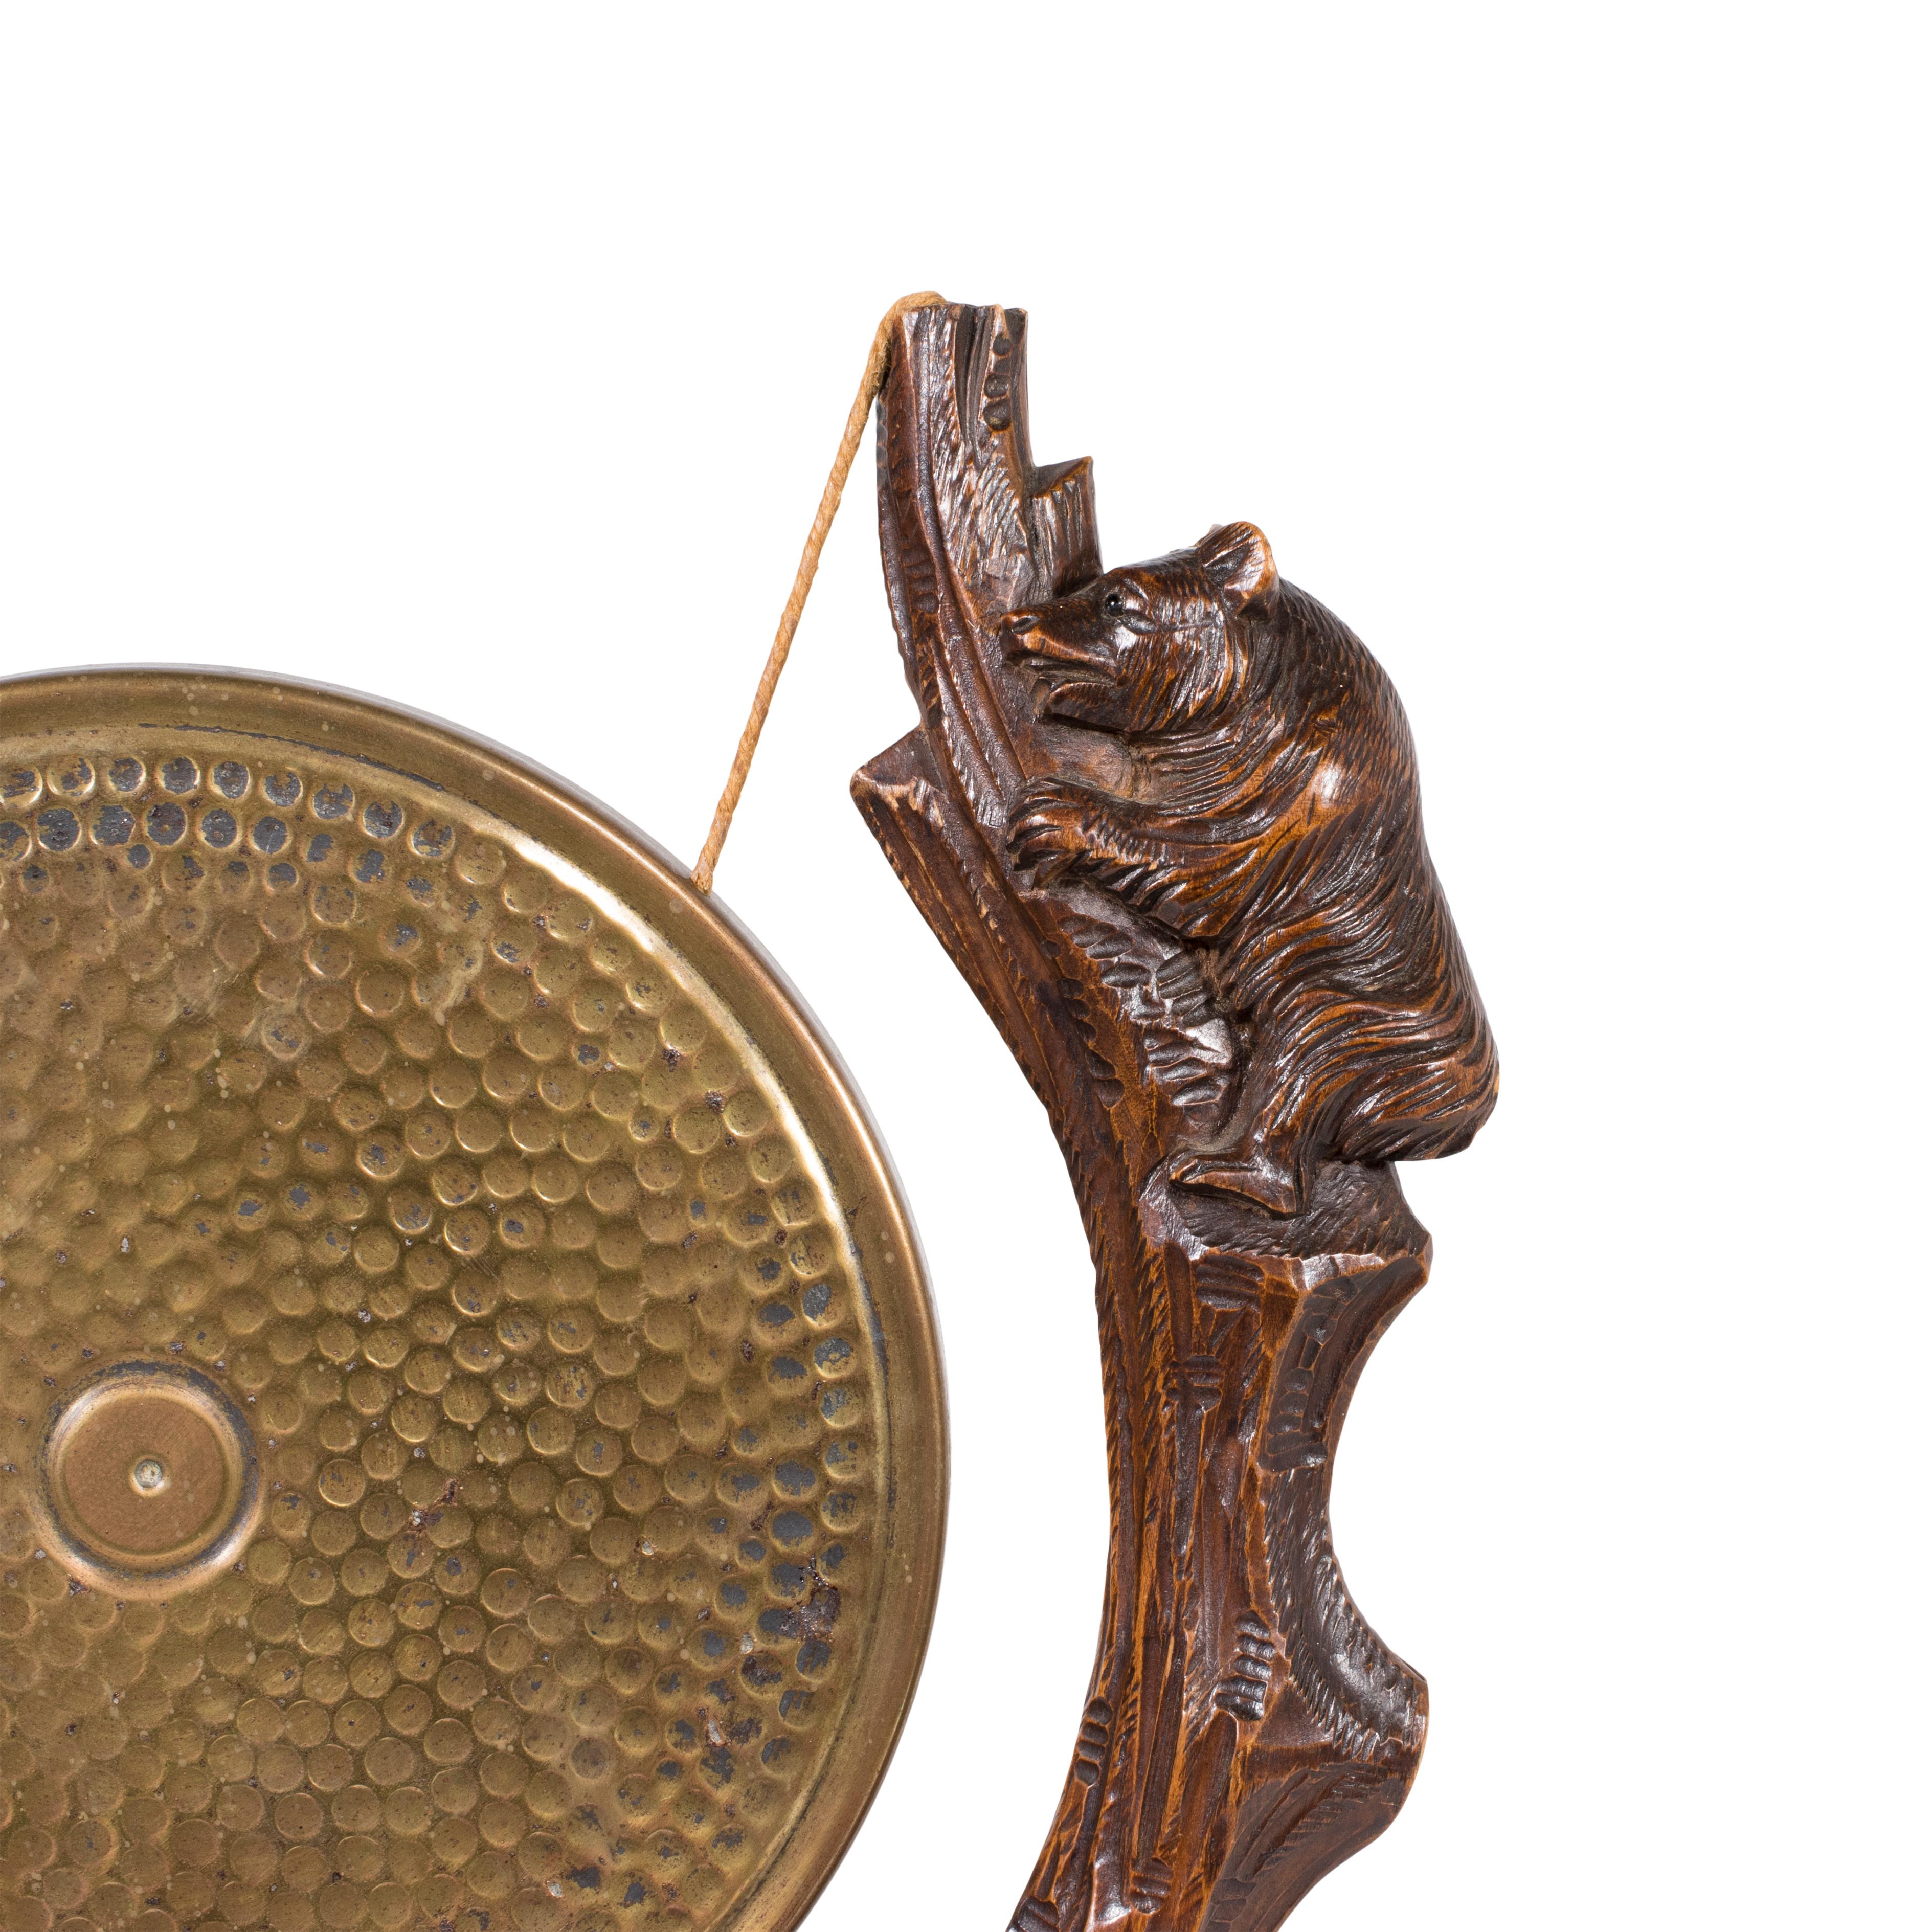 Gong de table en laiton sculpté de la Forêt Noire suisse du 19e siècle, suspendu par deux arbres dont chacun est orné d'un ours grimpant sculpté. Un travail très soigné et unique de la Forêt Noire. Véritable et authentique. 

Période : Premier quart